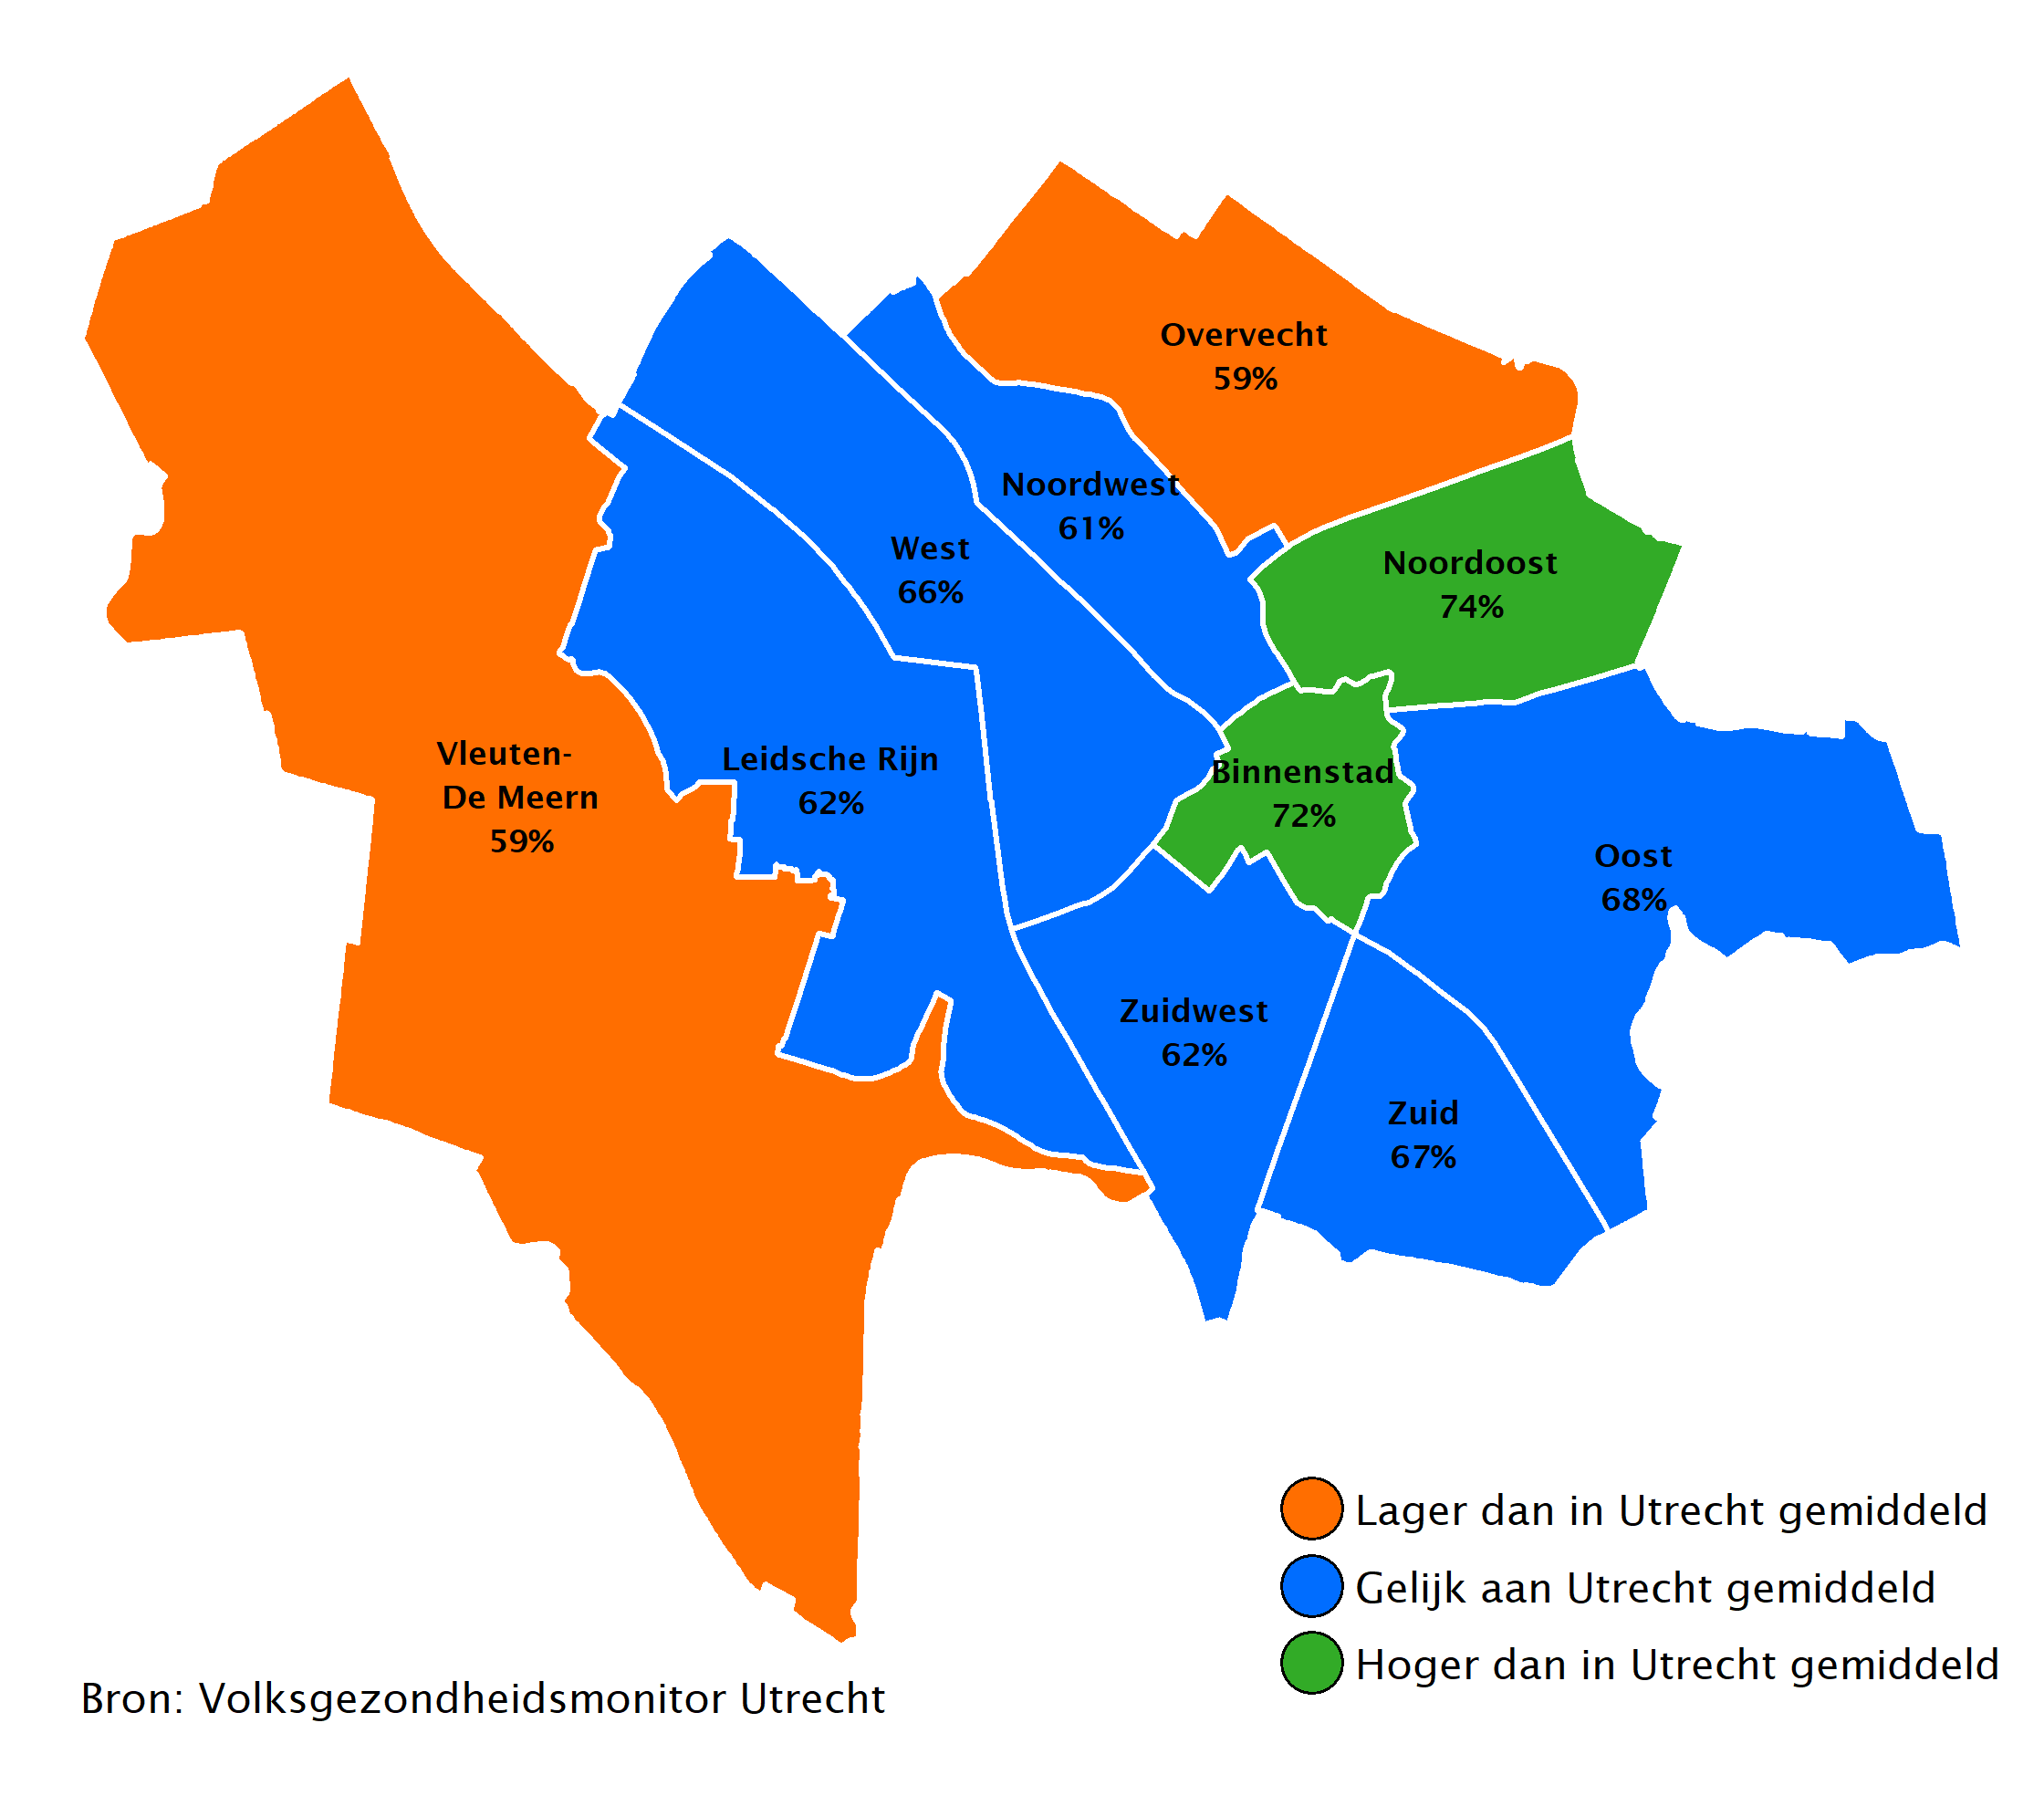 59% van de jongvolwassenen uit Overvecht en Vleuten-De Meern is tevreden over hun eigen leven. Dit is 72% in de Binnenstad en 74% in Noordoost.